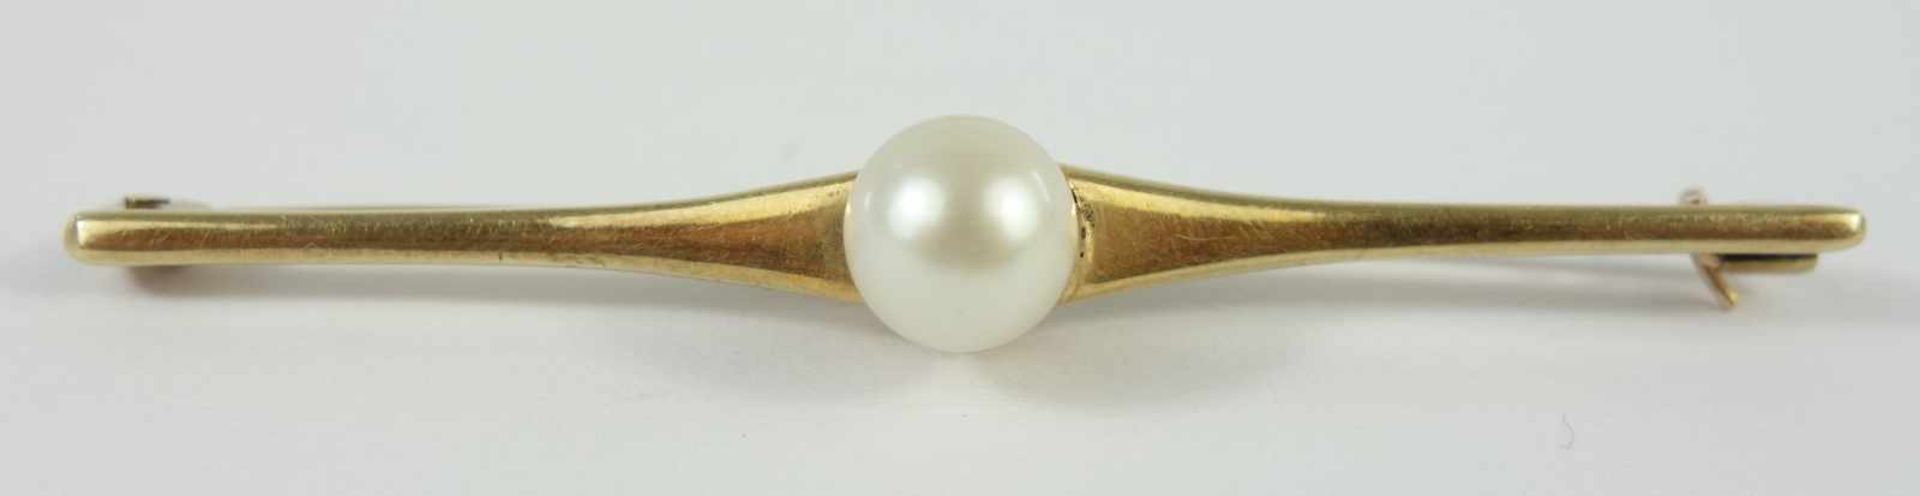 Brosche mit Perle, 585er GoldGew.2,96g, weiße Perle, D.ca.0,65cm, Broschen-L.5,3cm